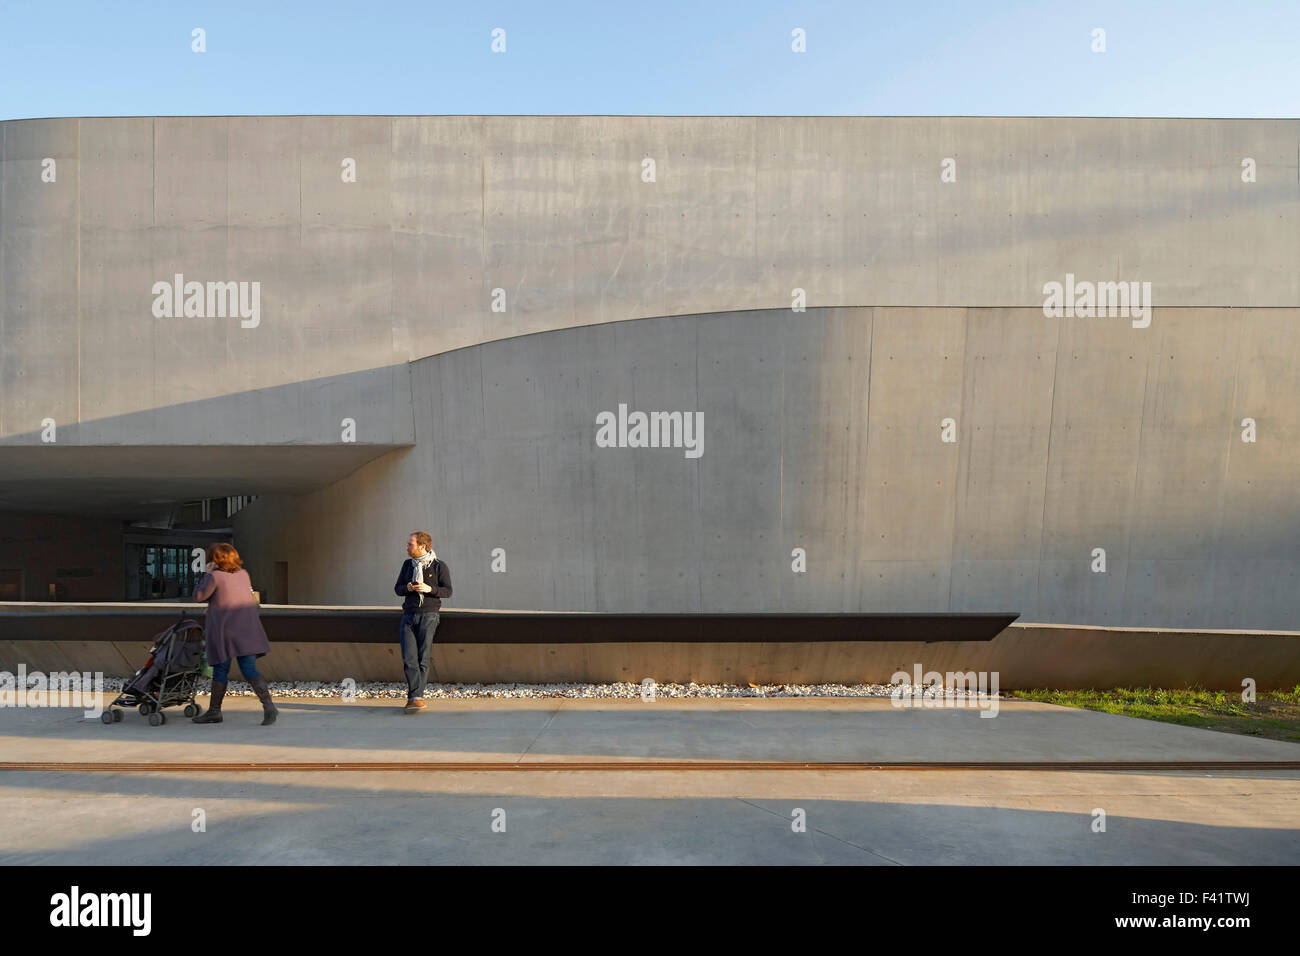 MAXXI Nationalmuseum für das 21. Jahrhundert Kunst, Rom, Italien. Architekt: Zaha Hadid Architects, 2009. Außenansicht des Betons Stockfoto